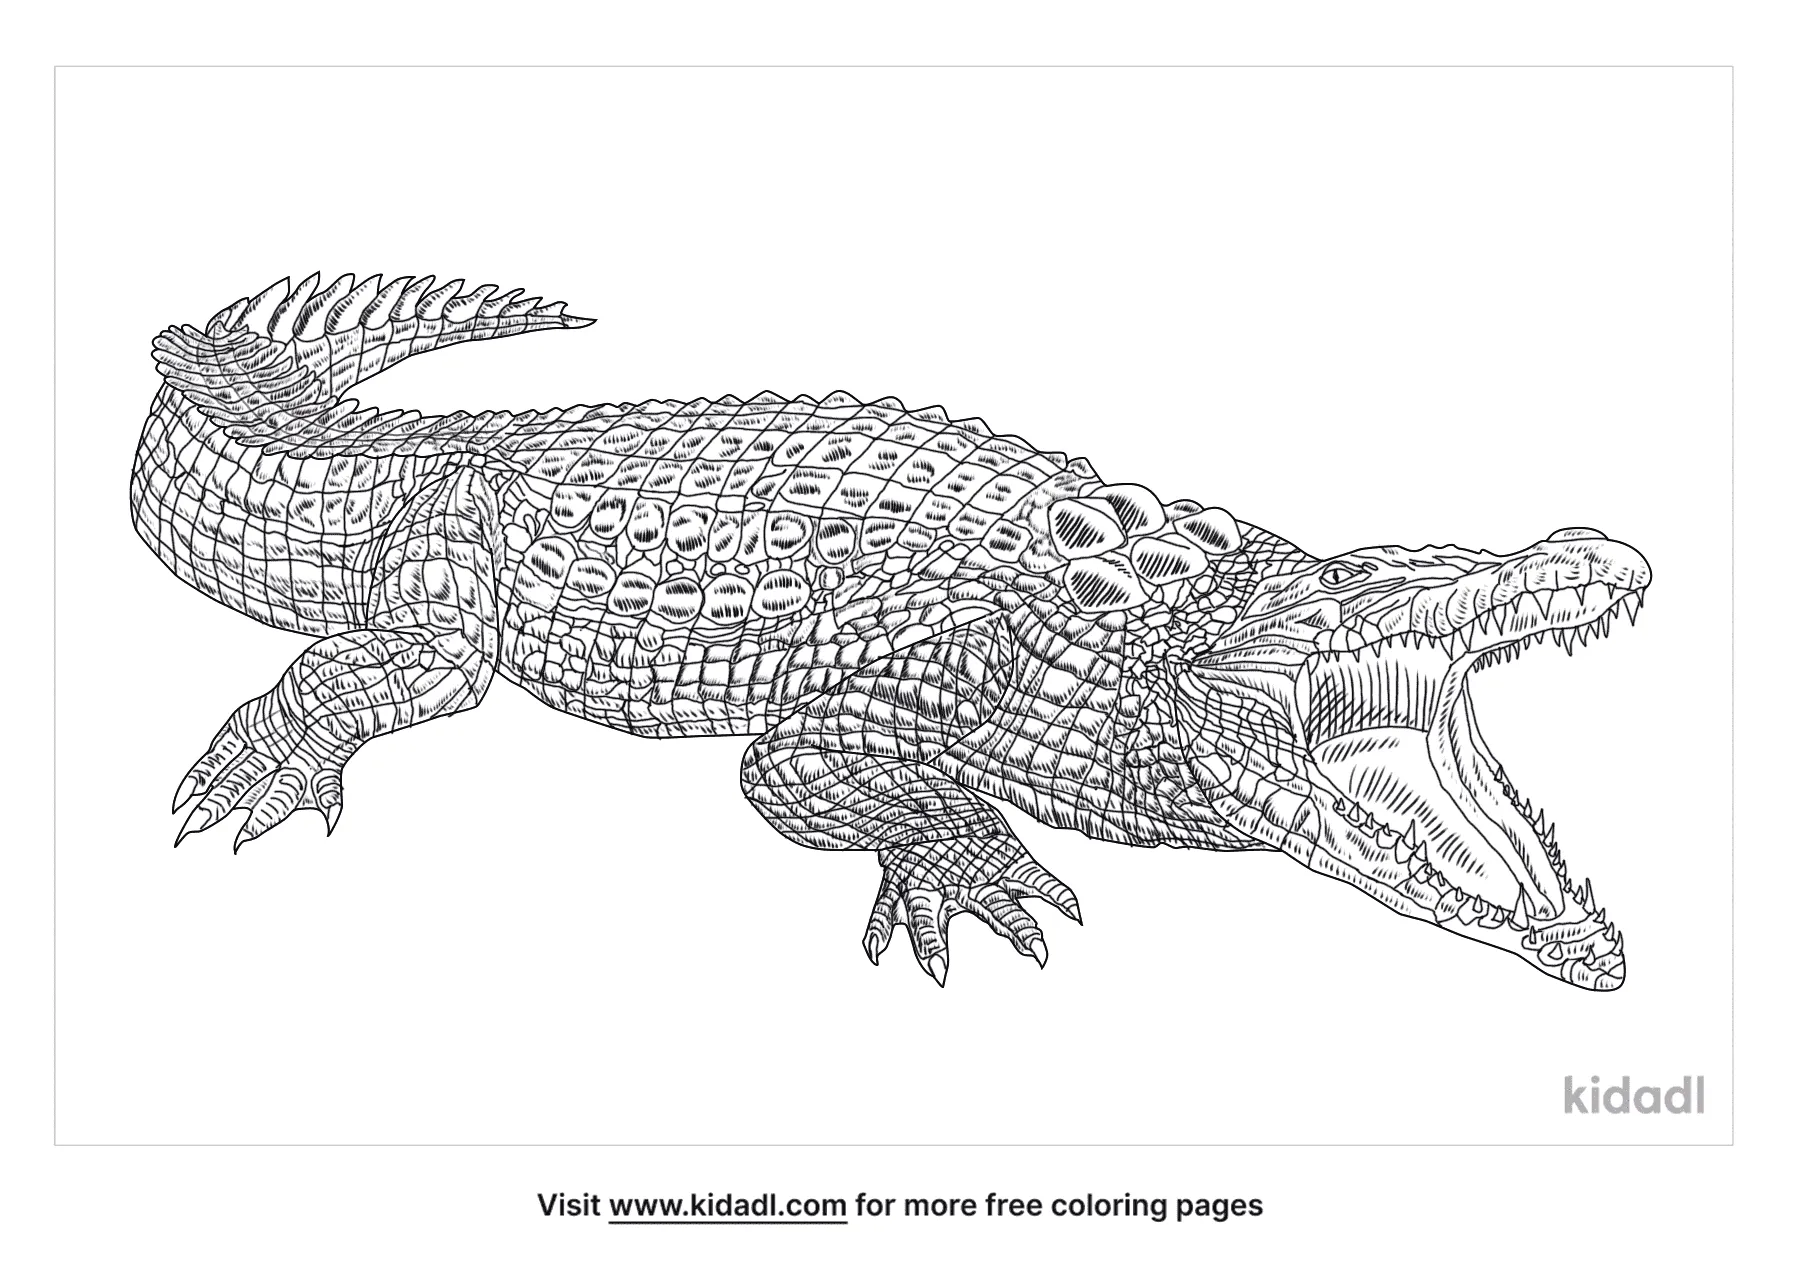 Распечатать фигурку гребнистый крокодил